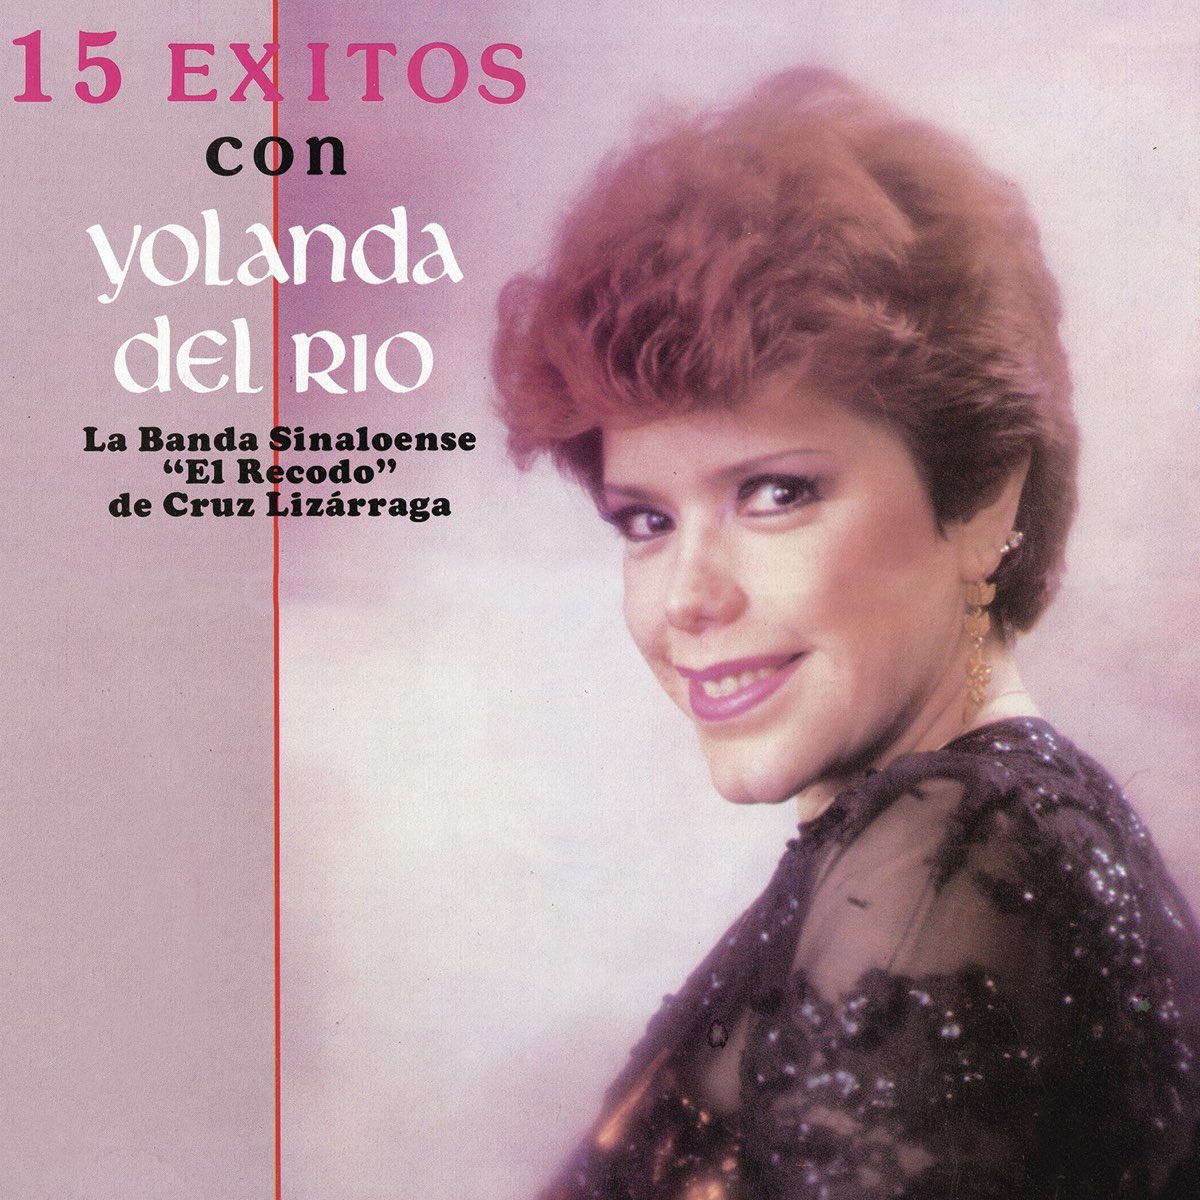 ‎15 Éxitos Con Yolanda del Río (feat. la Banda Sinaloense "El Recodo